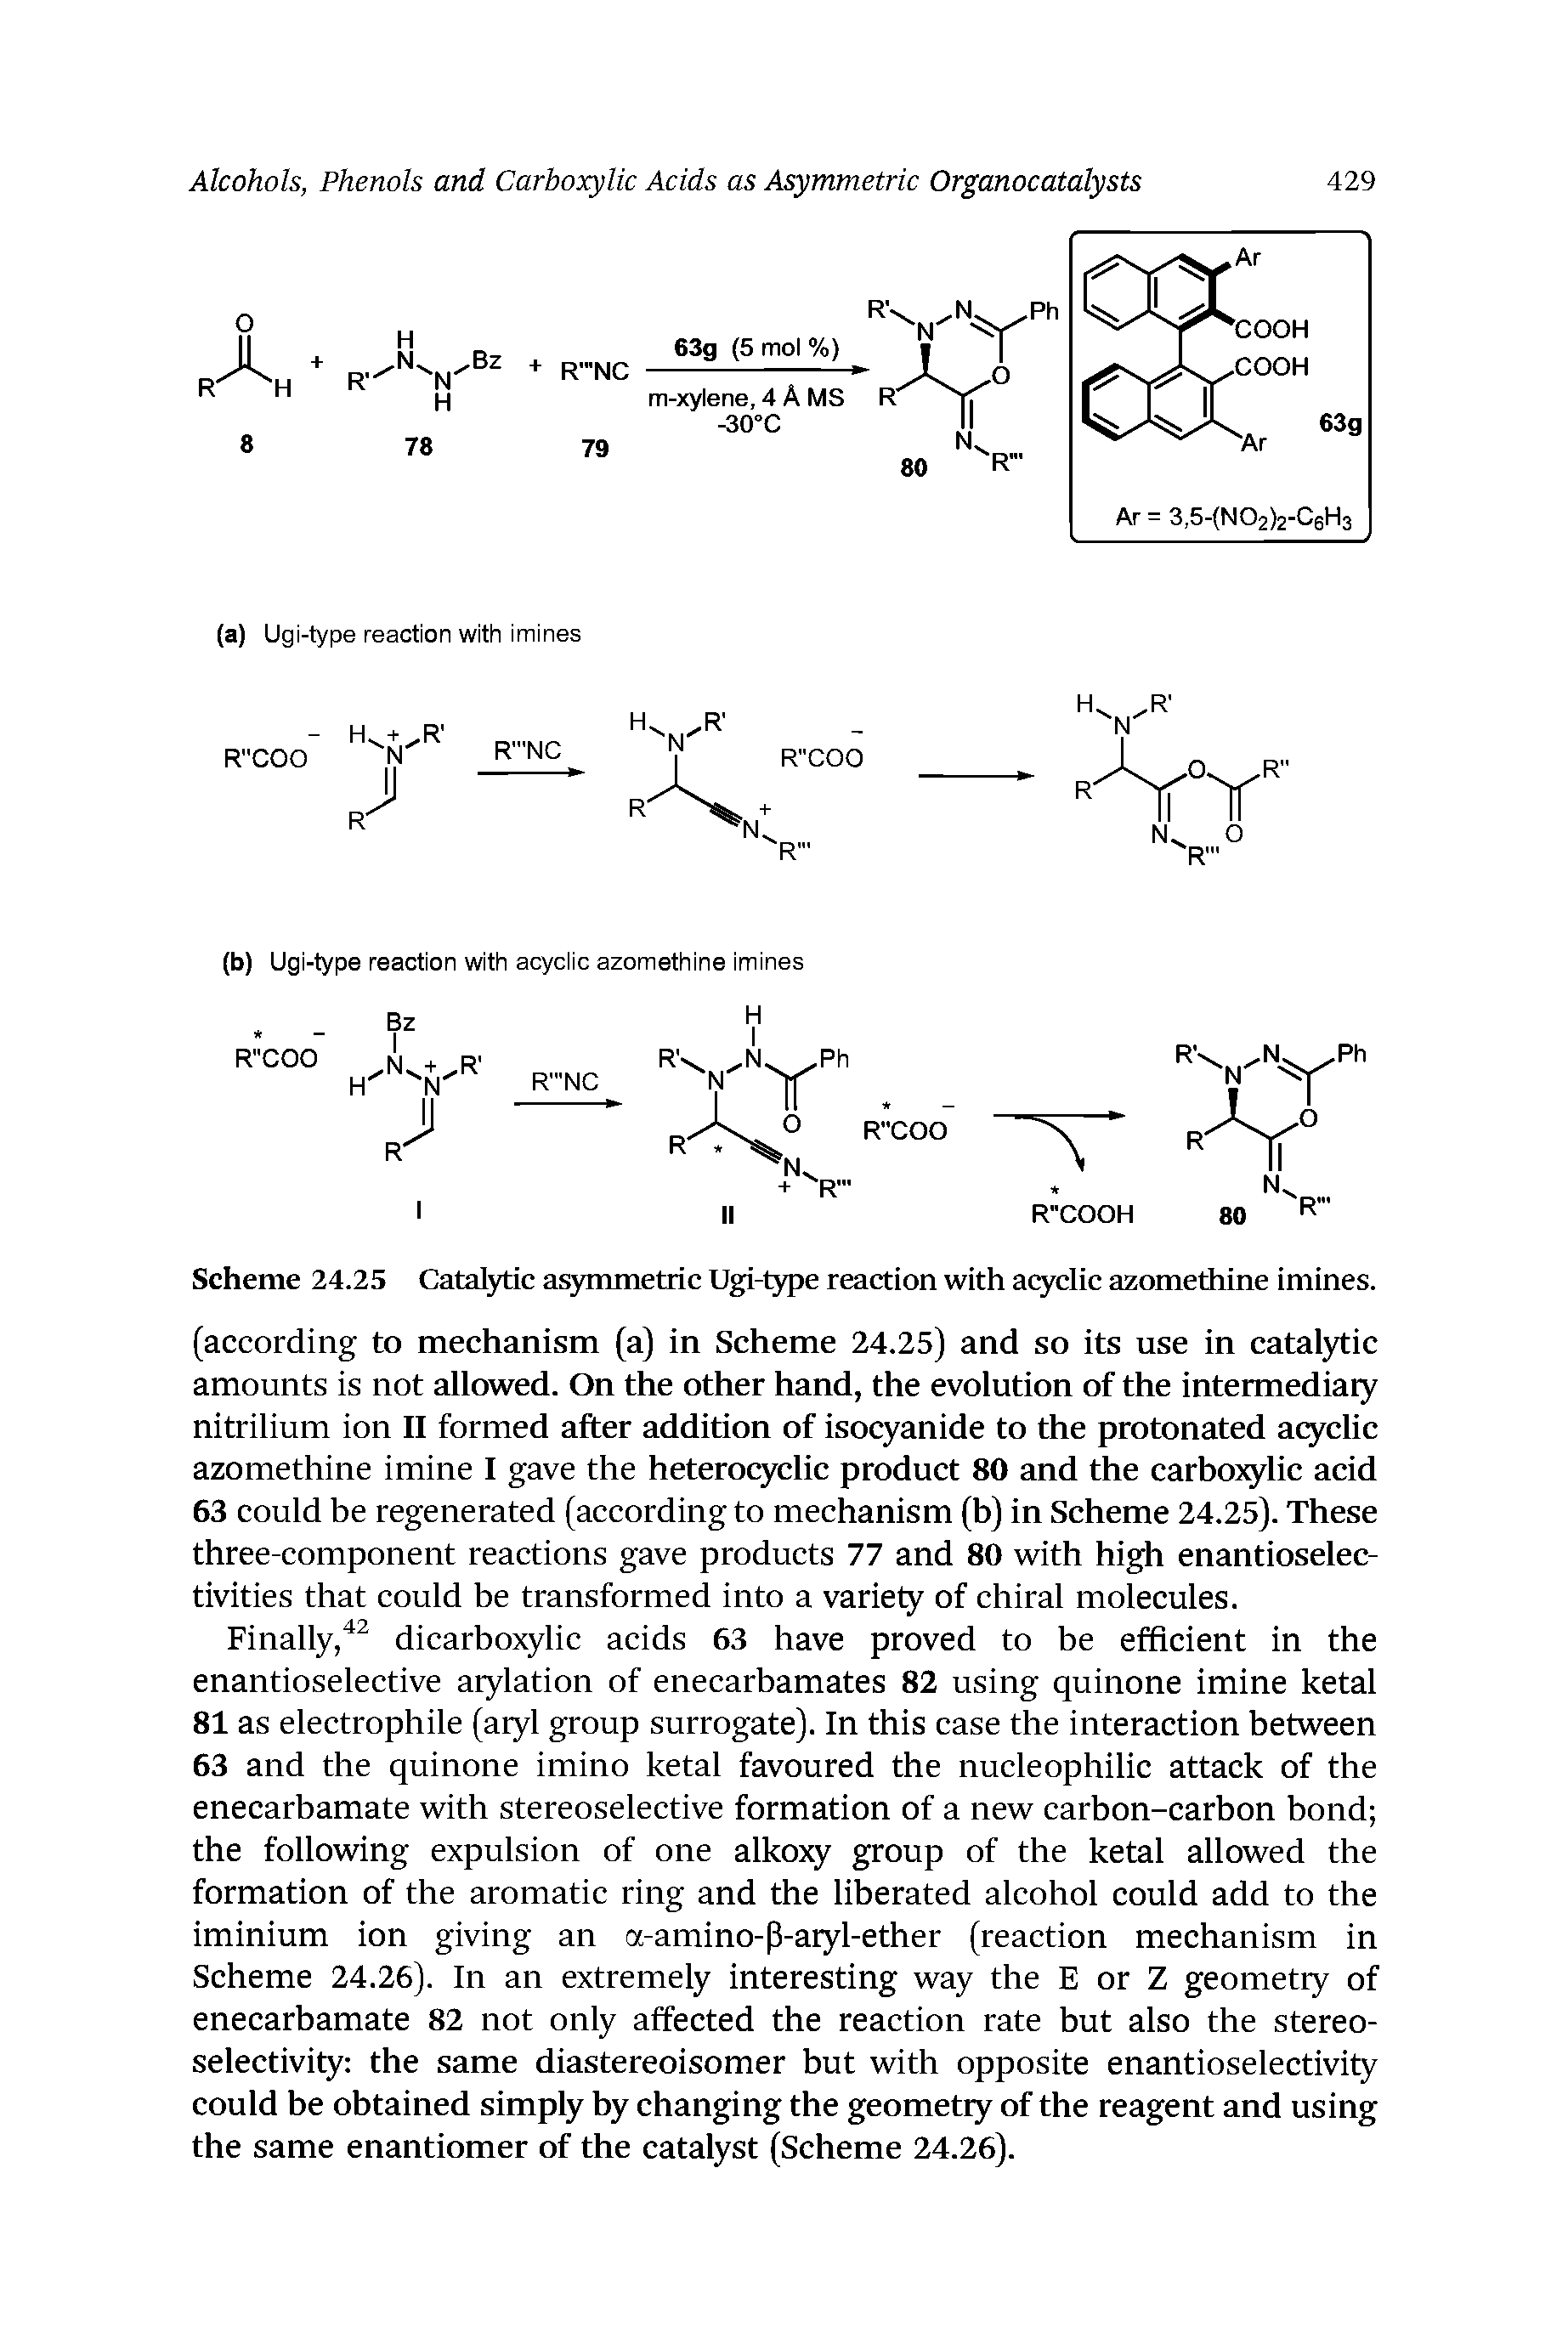 Scheme 24.25 Catatytic as54iunetric Ugi-type reaction with acyclic azomethine imines.